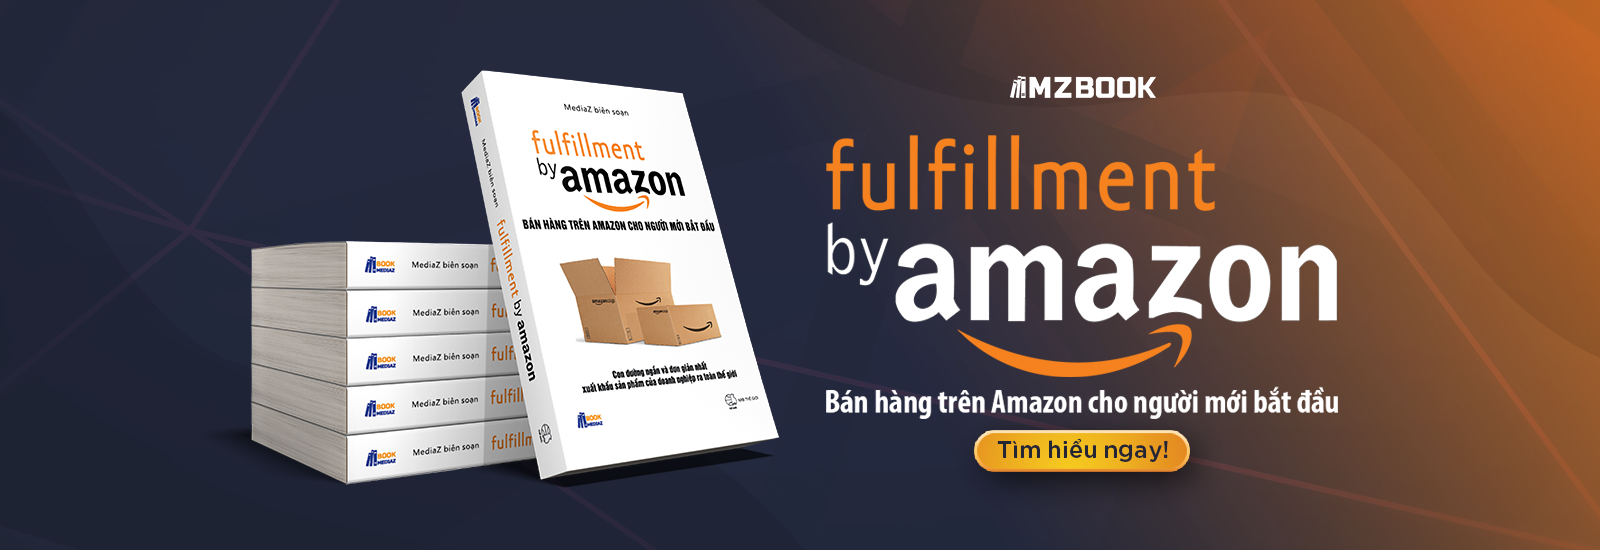 Fulfillment By Amazon là gì? Thông tin cho bạn đọc